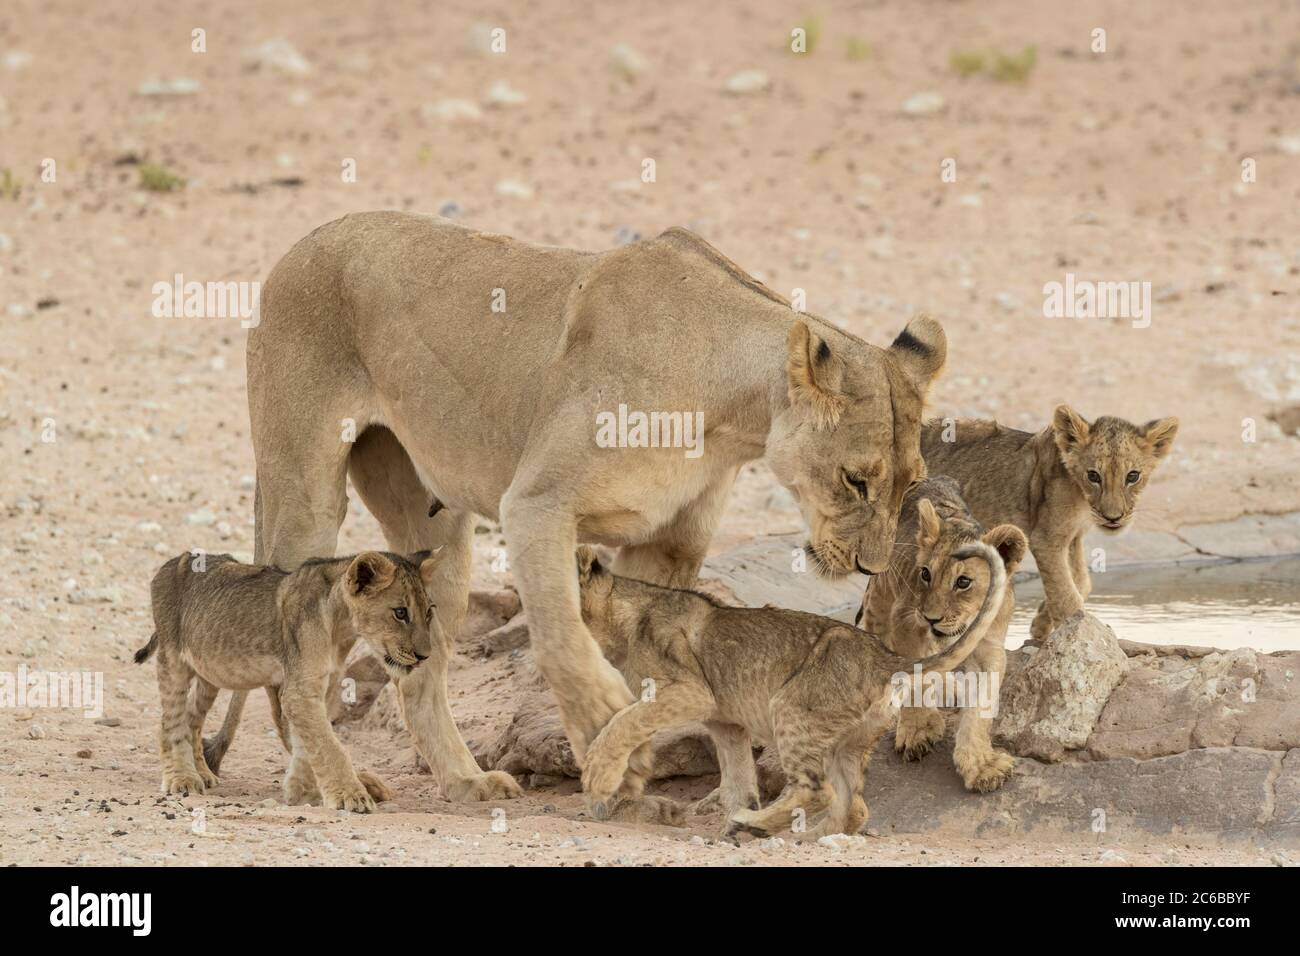 Lionne (Panthera leo) avec des petits, Parc transfrontalier Kgalagadi, Afrique du Sud, Afrique Banque D'Images